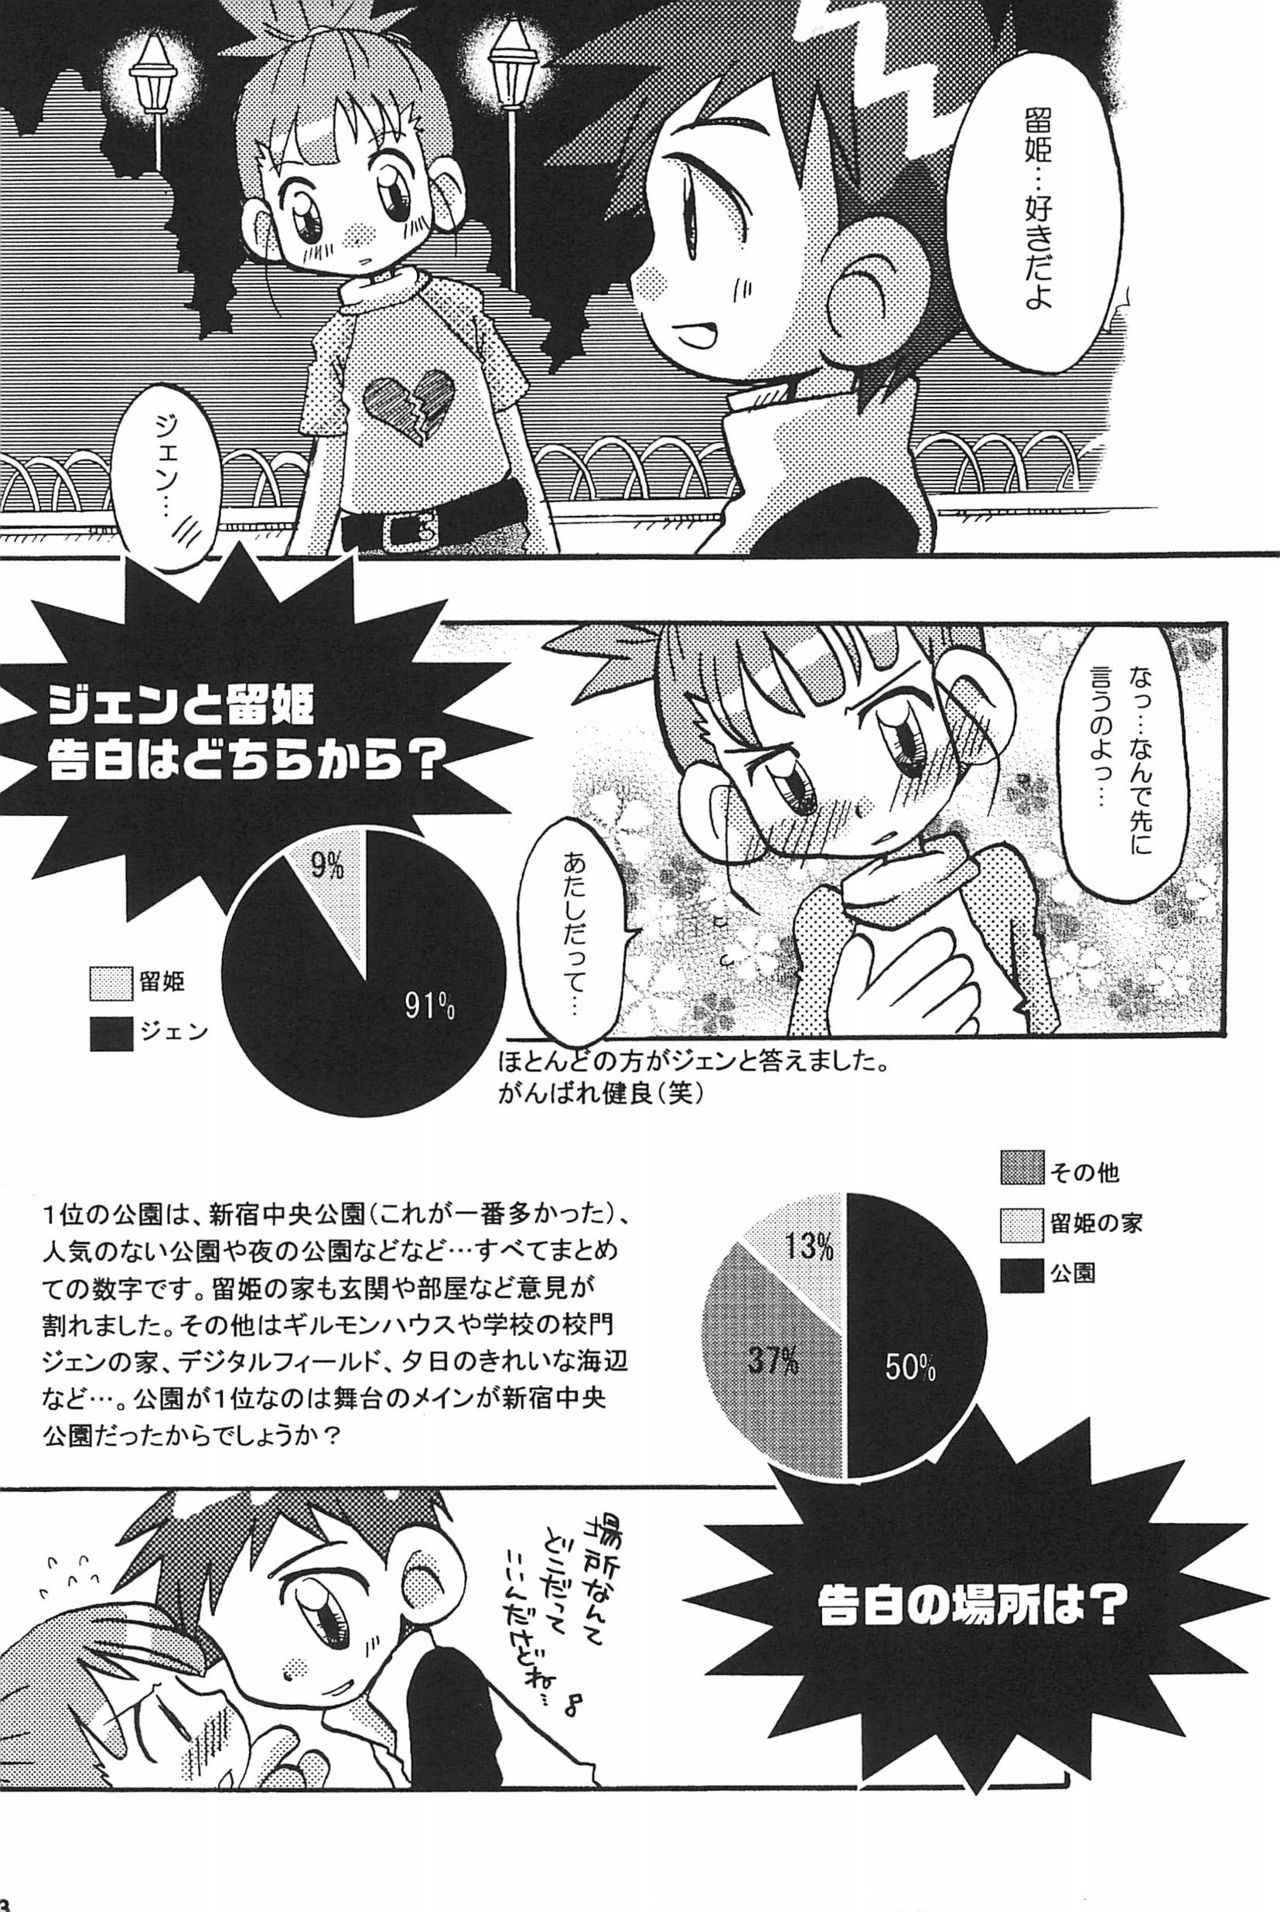 (SC15) [LeeRuki Anthology Jikkou Iinkai (Various)] LeeRuki Anthology J&R REPORT (Digimon Tamers) 44